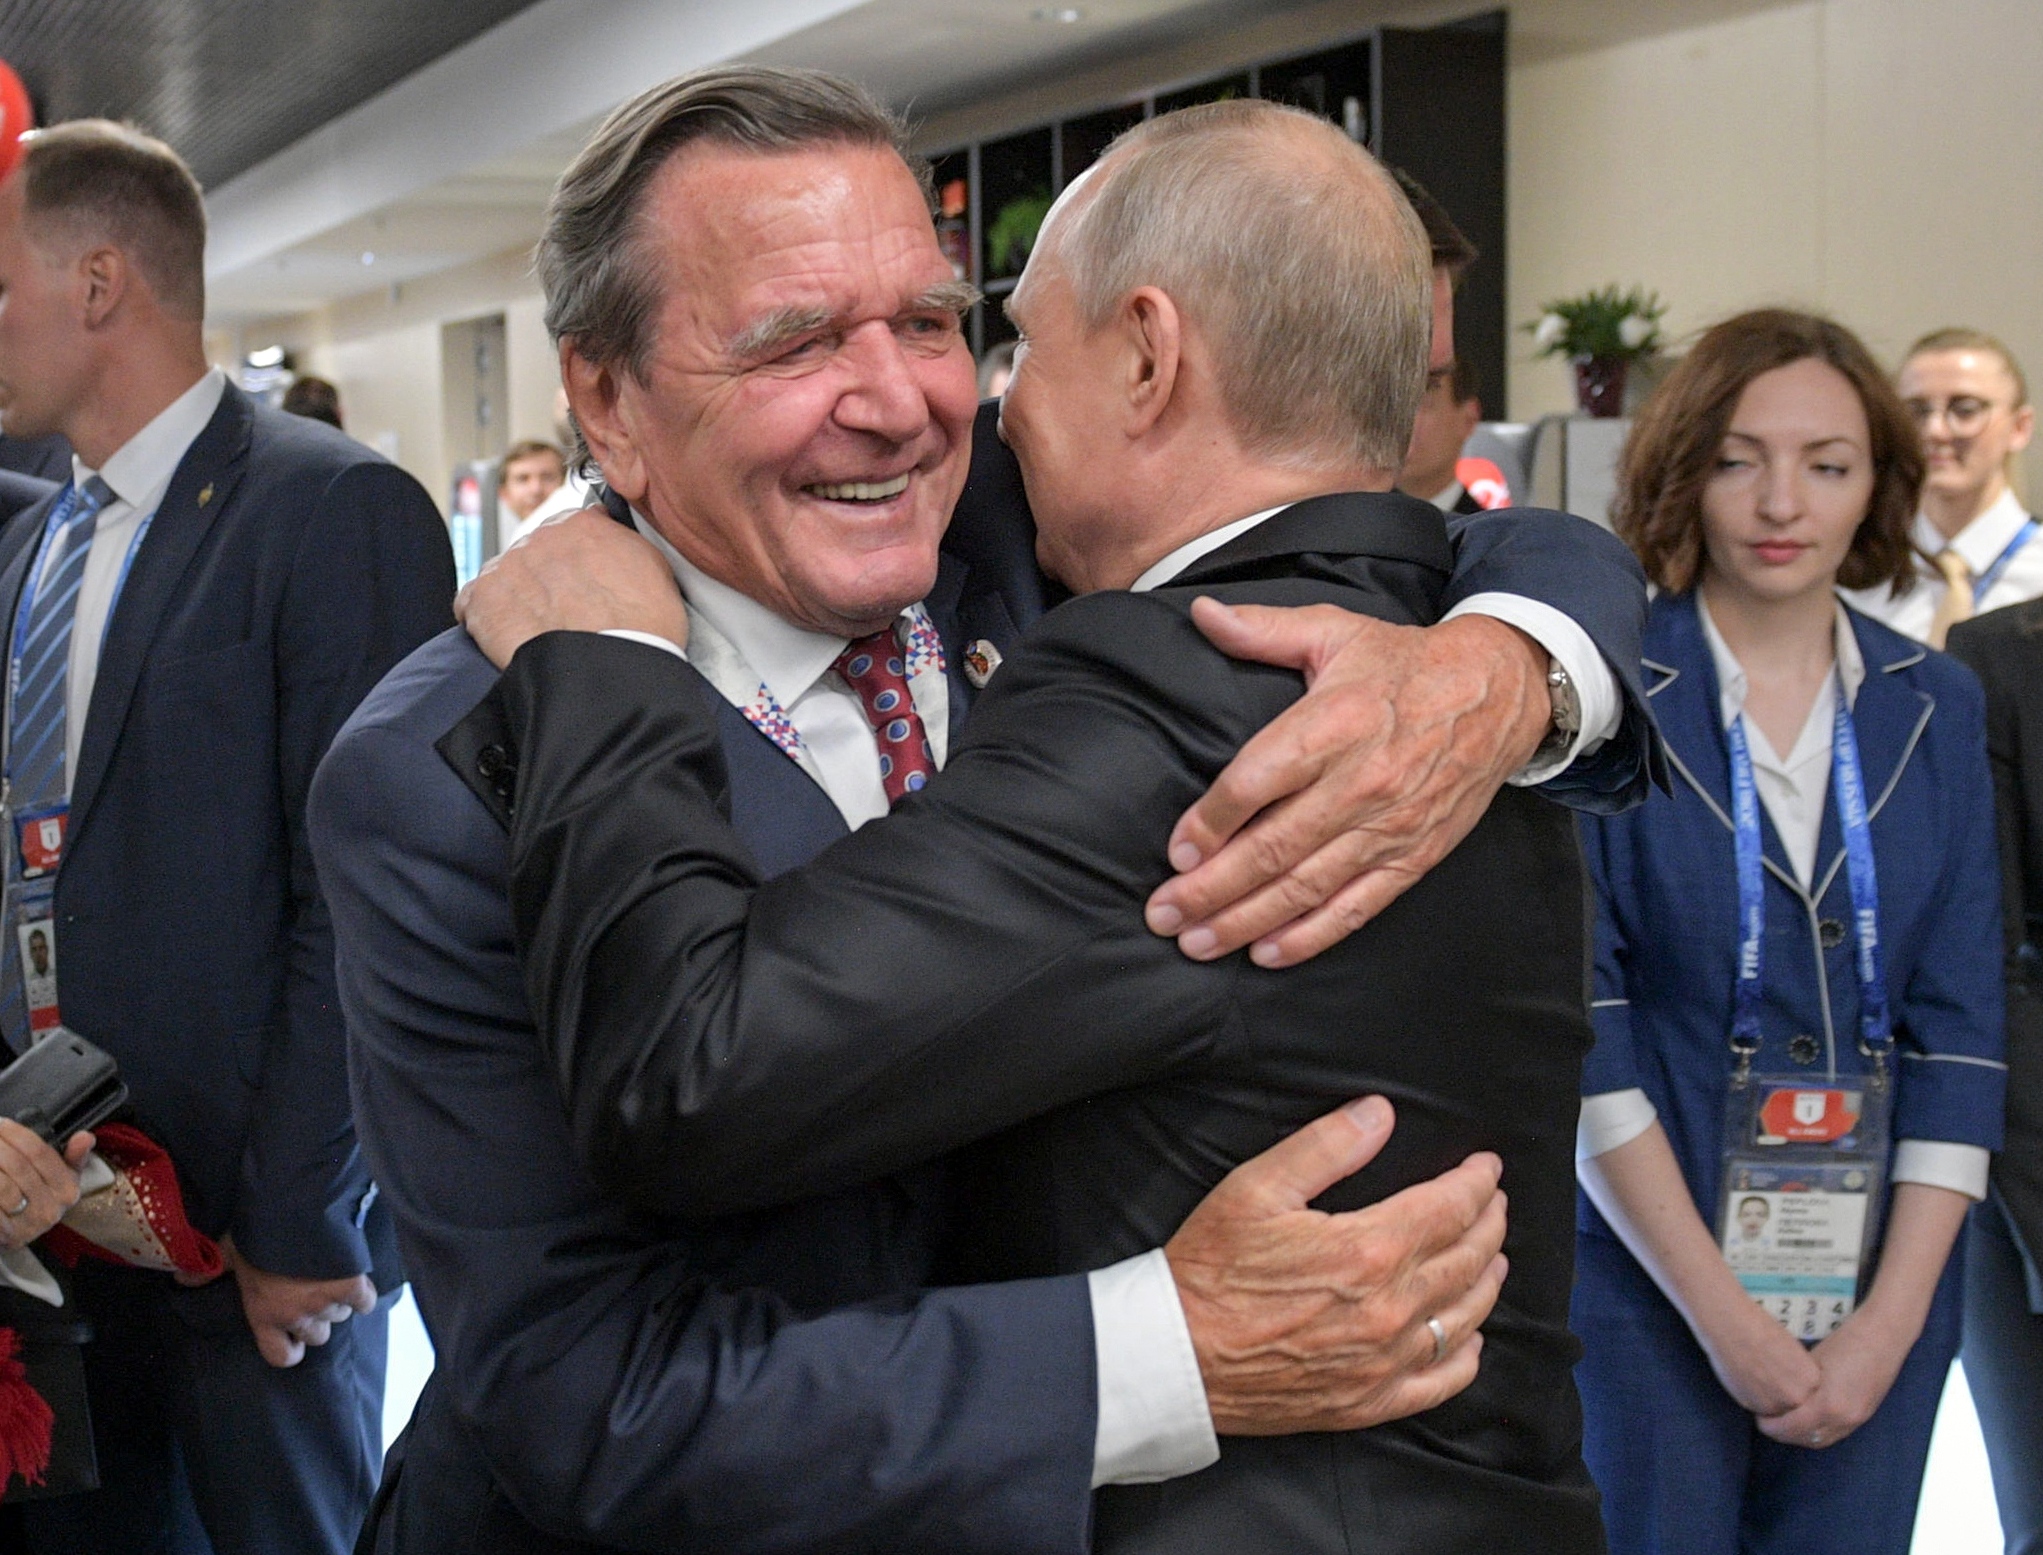 Gute Freunde: Gerhard Schröder (SPD, l.), ehemaliger Bundeskanzler, umarmt Wladimir Putin, Präsident von Russland.